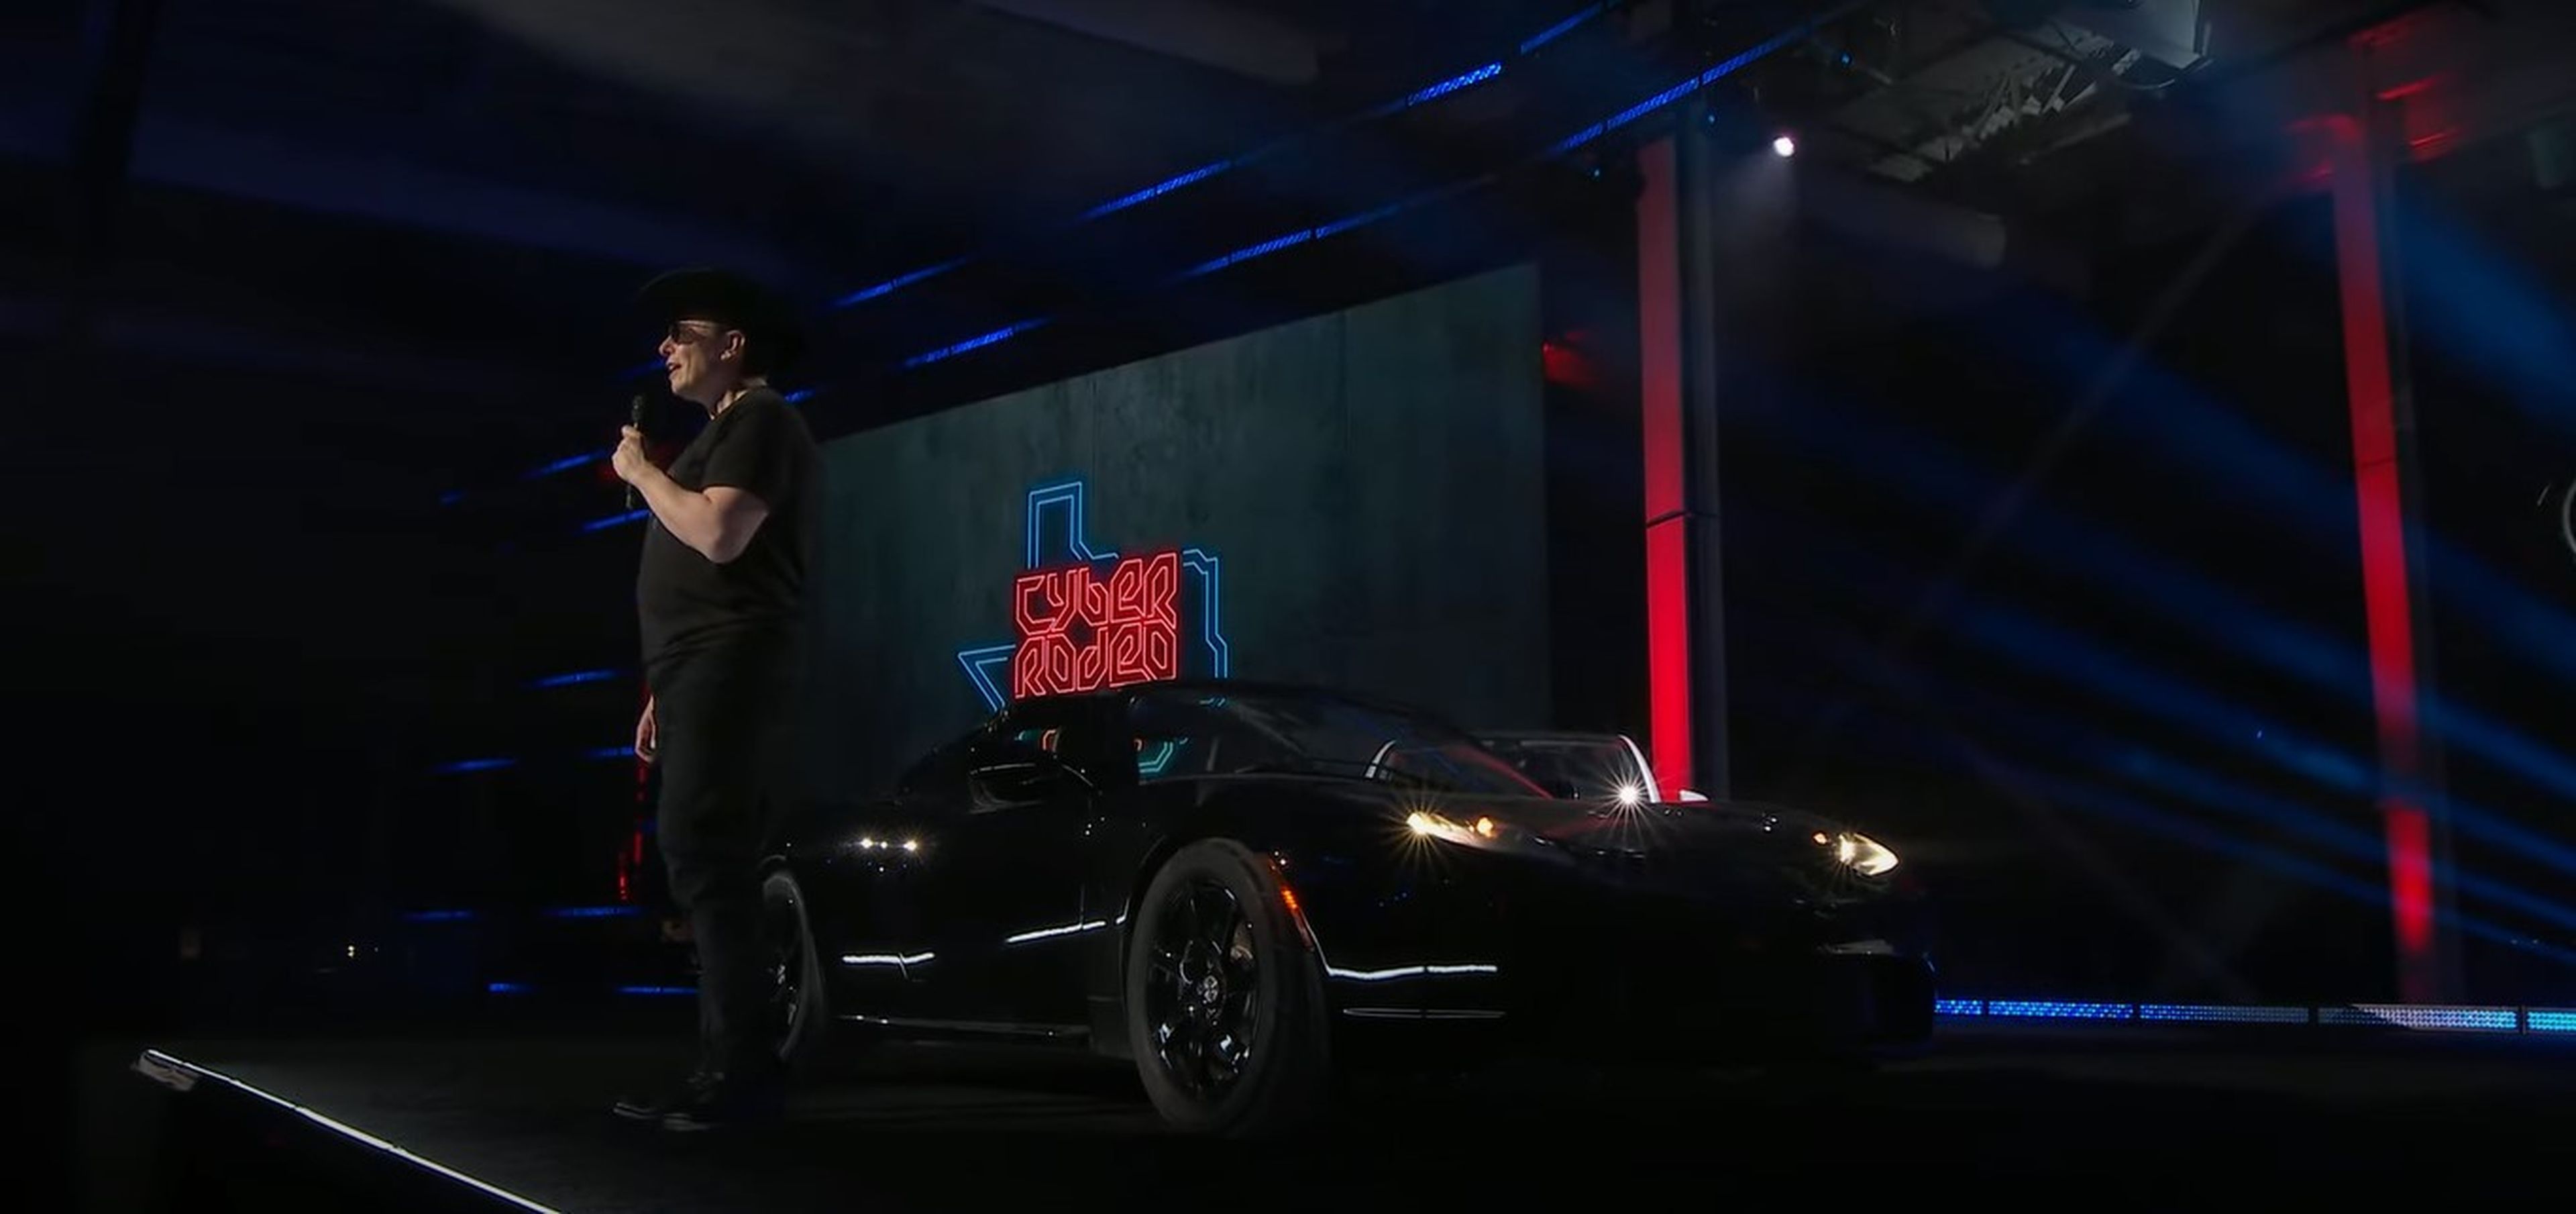 Elon musk promete la conducción autónoma nivel 3 en sus Tesla en Europa este verano y completa en EE.UU.